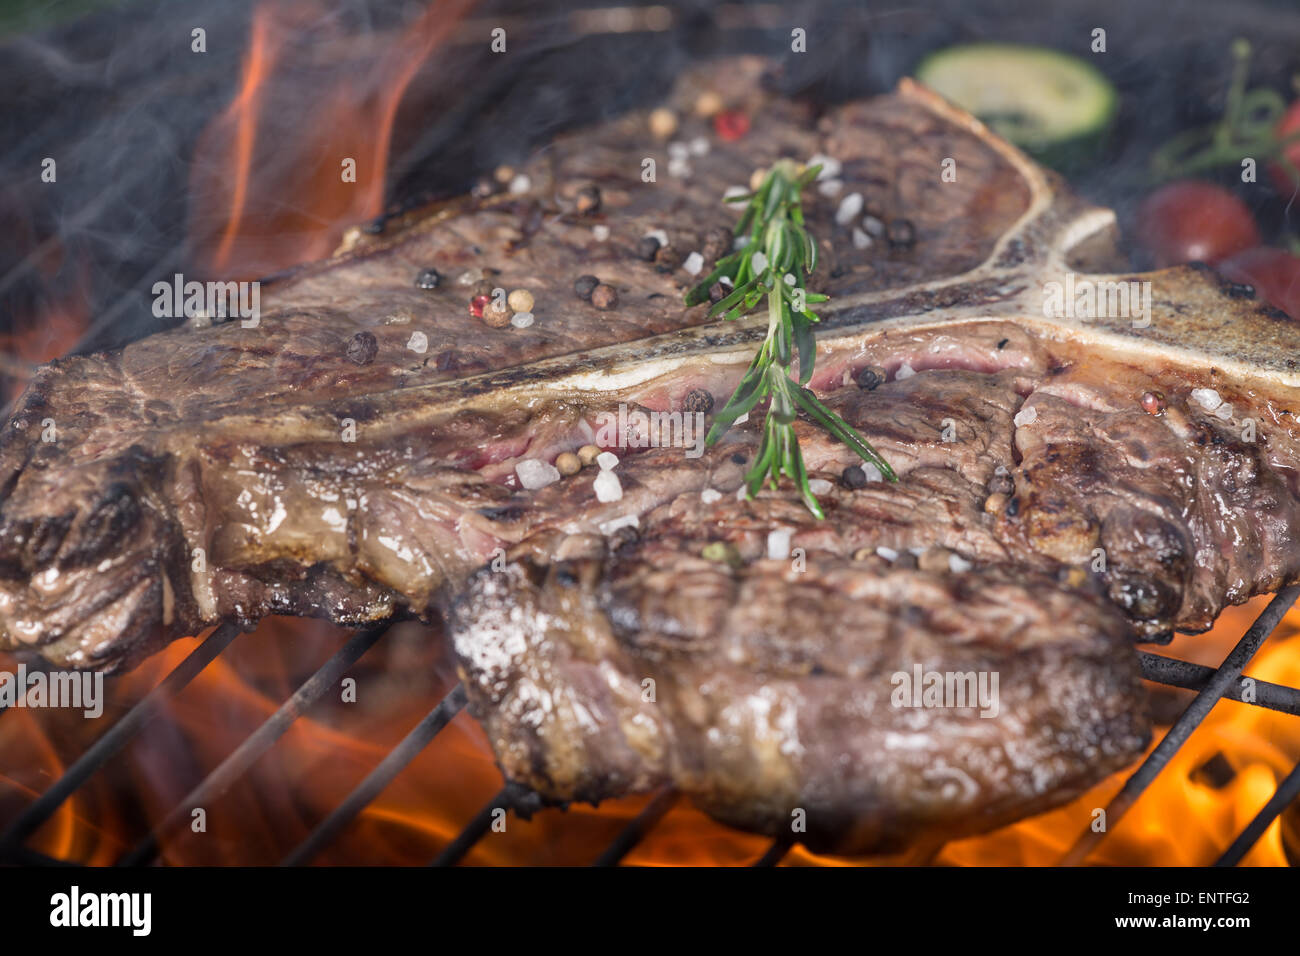 Deliziose carni bovine t-bone steak su garden grill, close-up Foto Stock